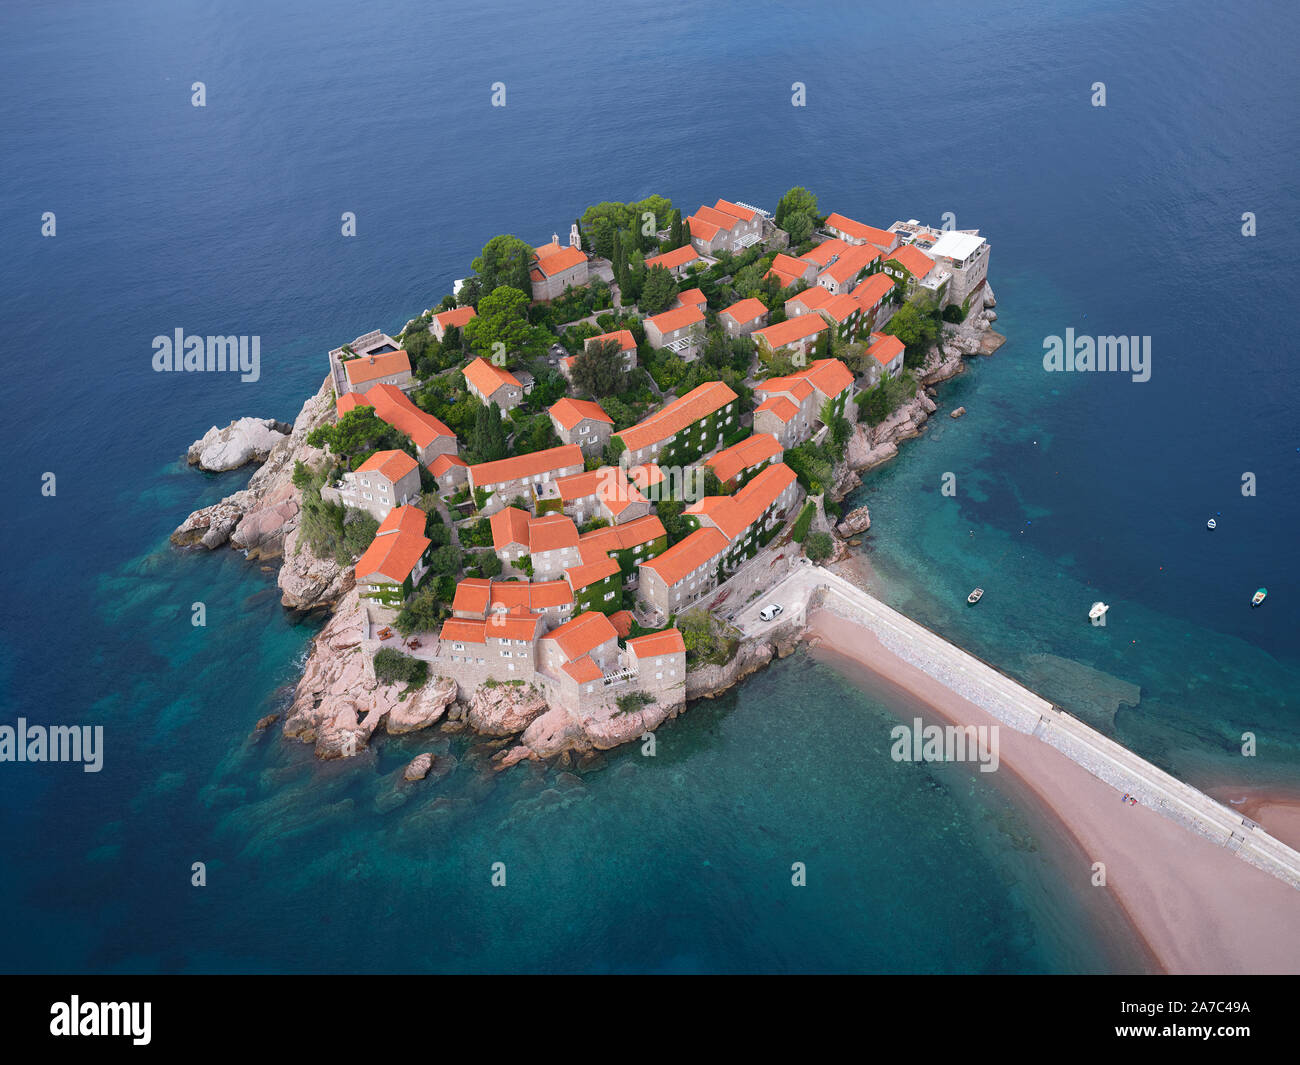 LUFTAUFNAHME. Fünf-Sterne-Hotel auf einer gebundenen Insel, erreichbar durch einen sandigen Tombolo. Sveti Stefan, Montenegro. Stockfoto